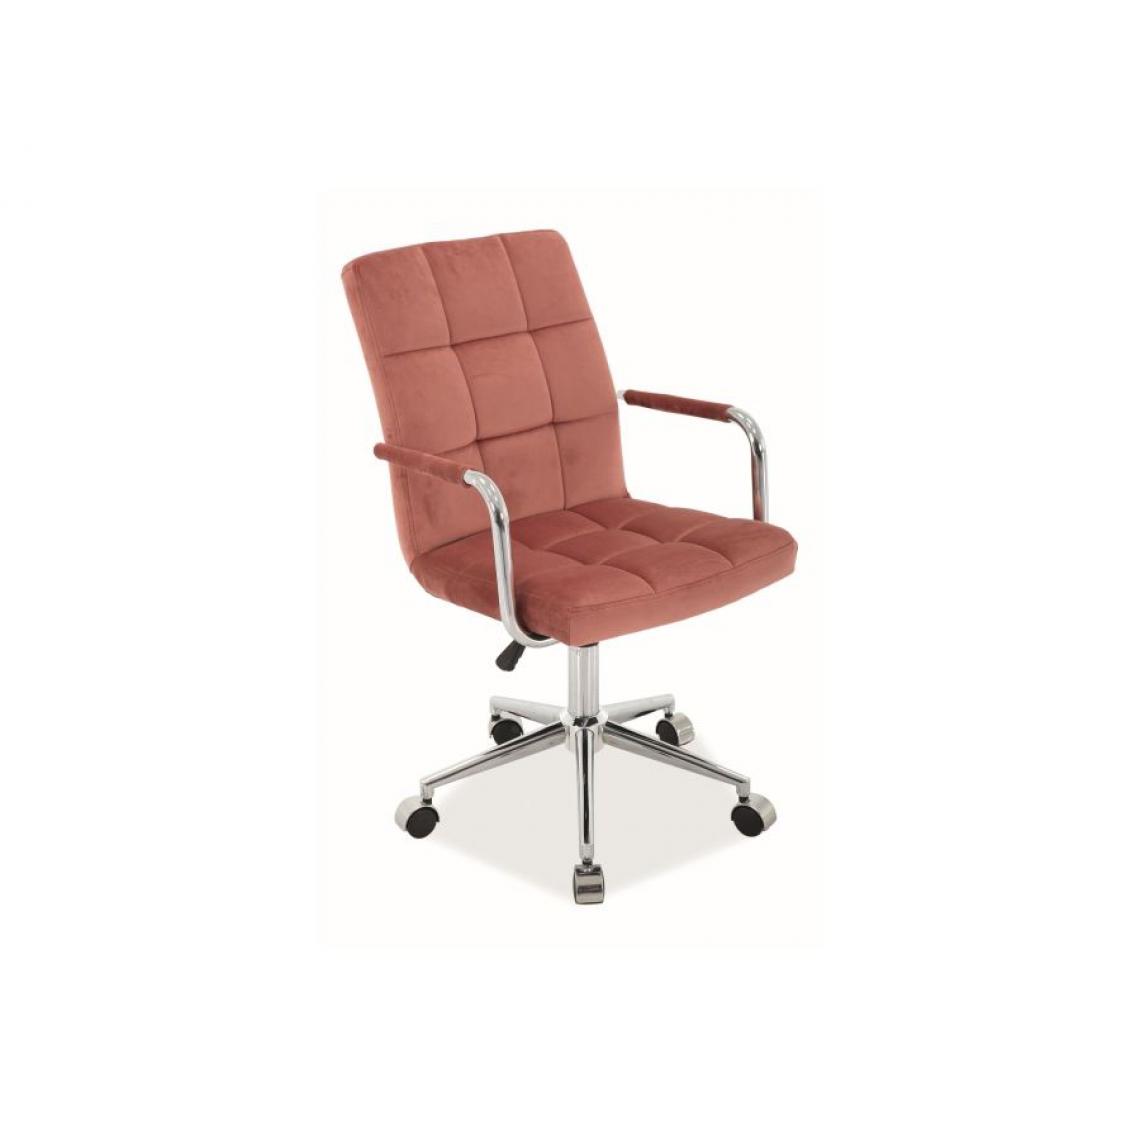 Hucoco - WIONE | Chaise pivotante piètement chromé | Hauteur : 87-97 cm | Chaise de bureau | Revêtement en cuir écologique - Rose - Chaises